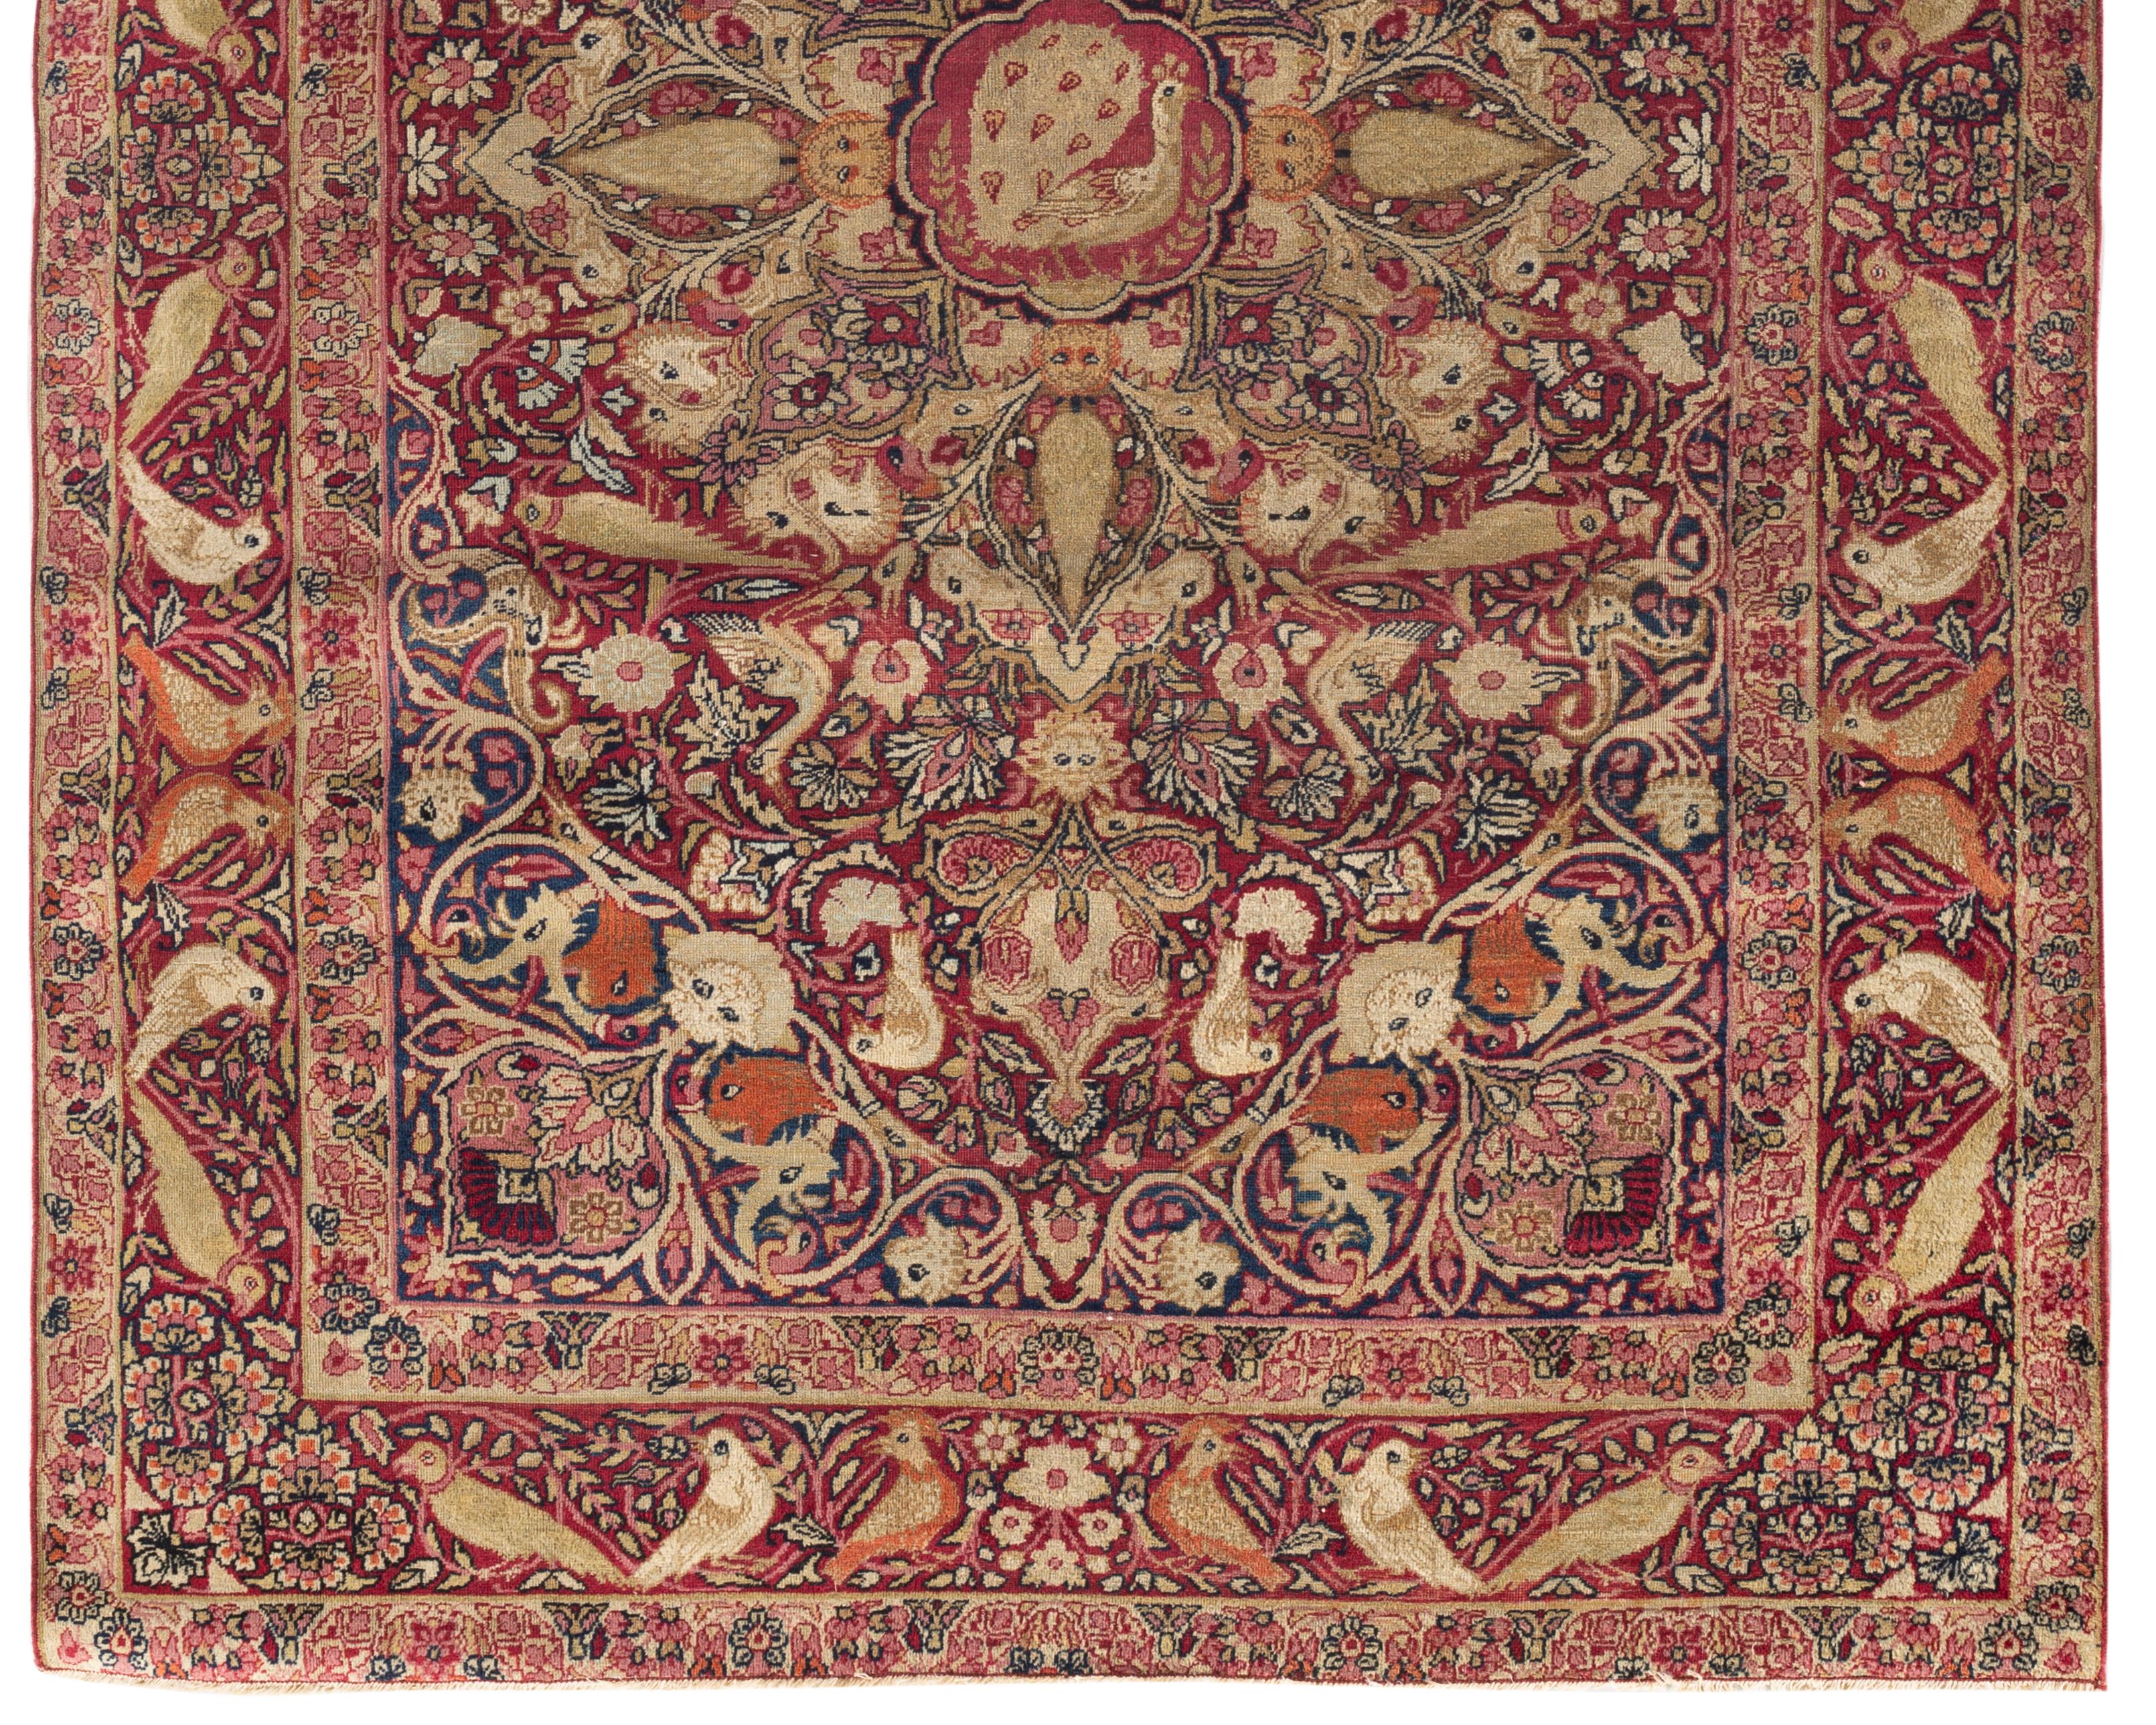 Antiker persischer Kirman-Lavar-Teppich um 1880. Einige der schönsten Teppiche der Welt stammen aus dem berühmten Webereigebiet, das als Lavar oder Ravar bekannt ist. Etwa 60 Meilen nördlich von Kirman gelegen, weben sie seit über 200 Jahren